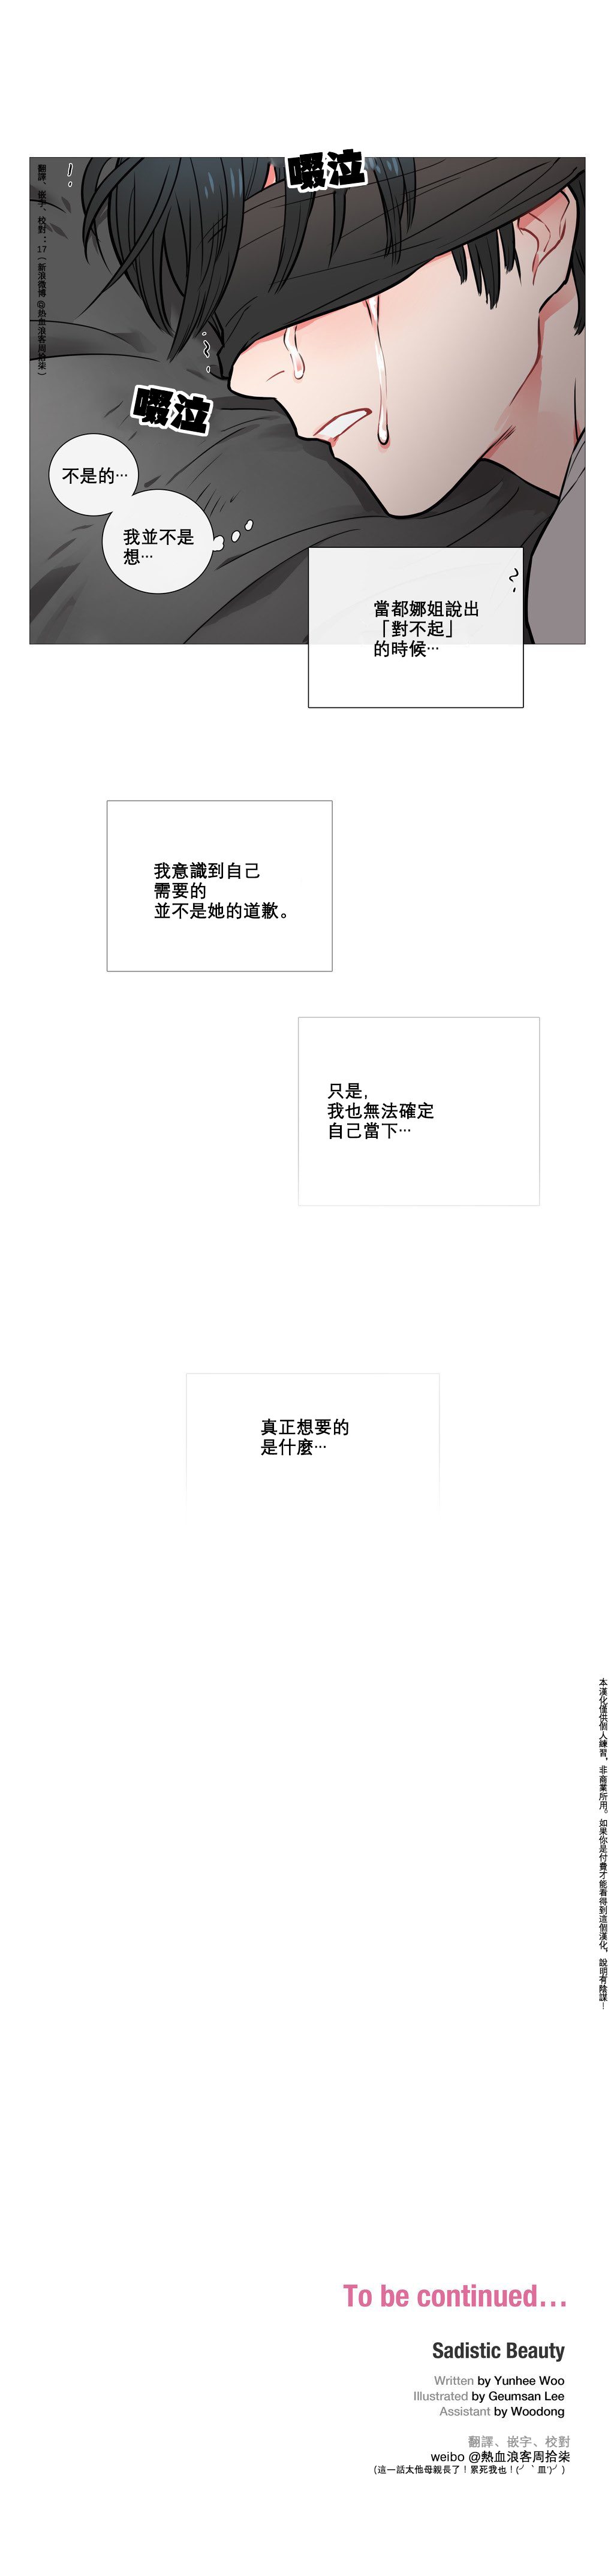 【神山】サディスティックビューティーCh.1-17【中国語】【17汉化】